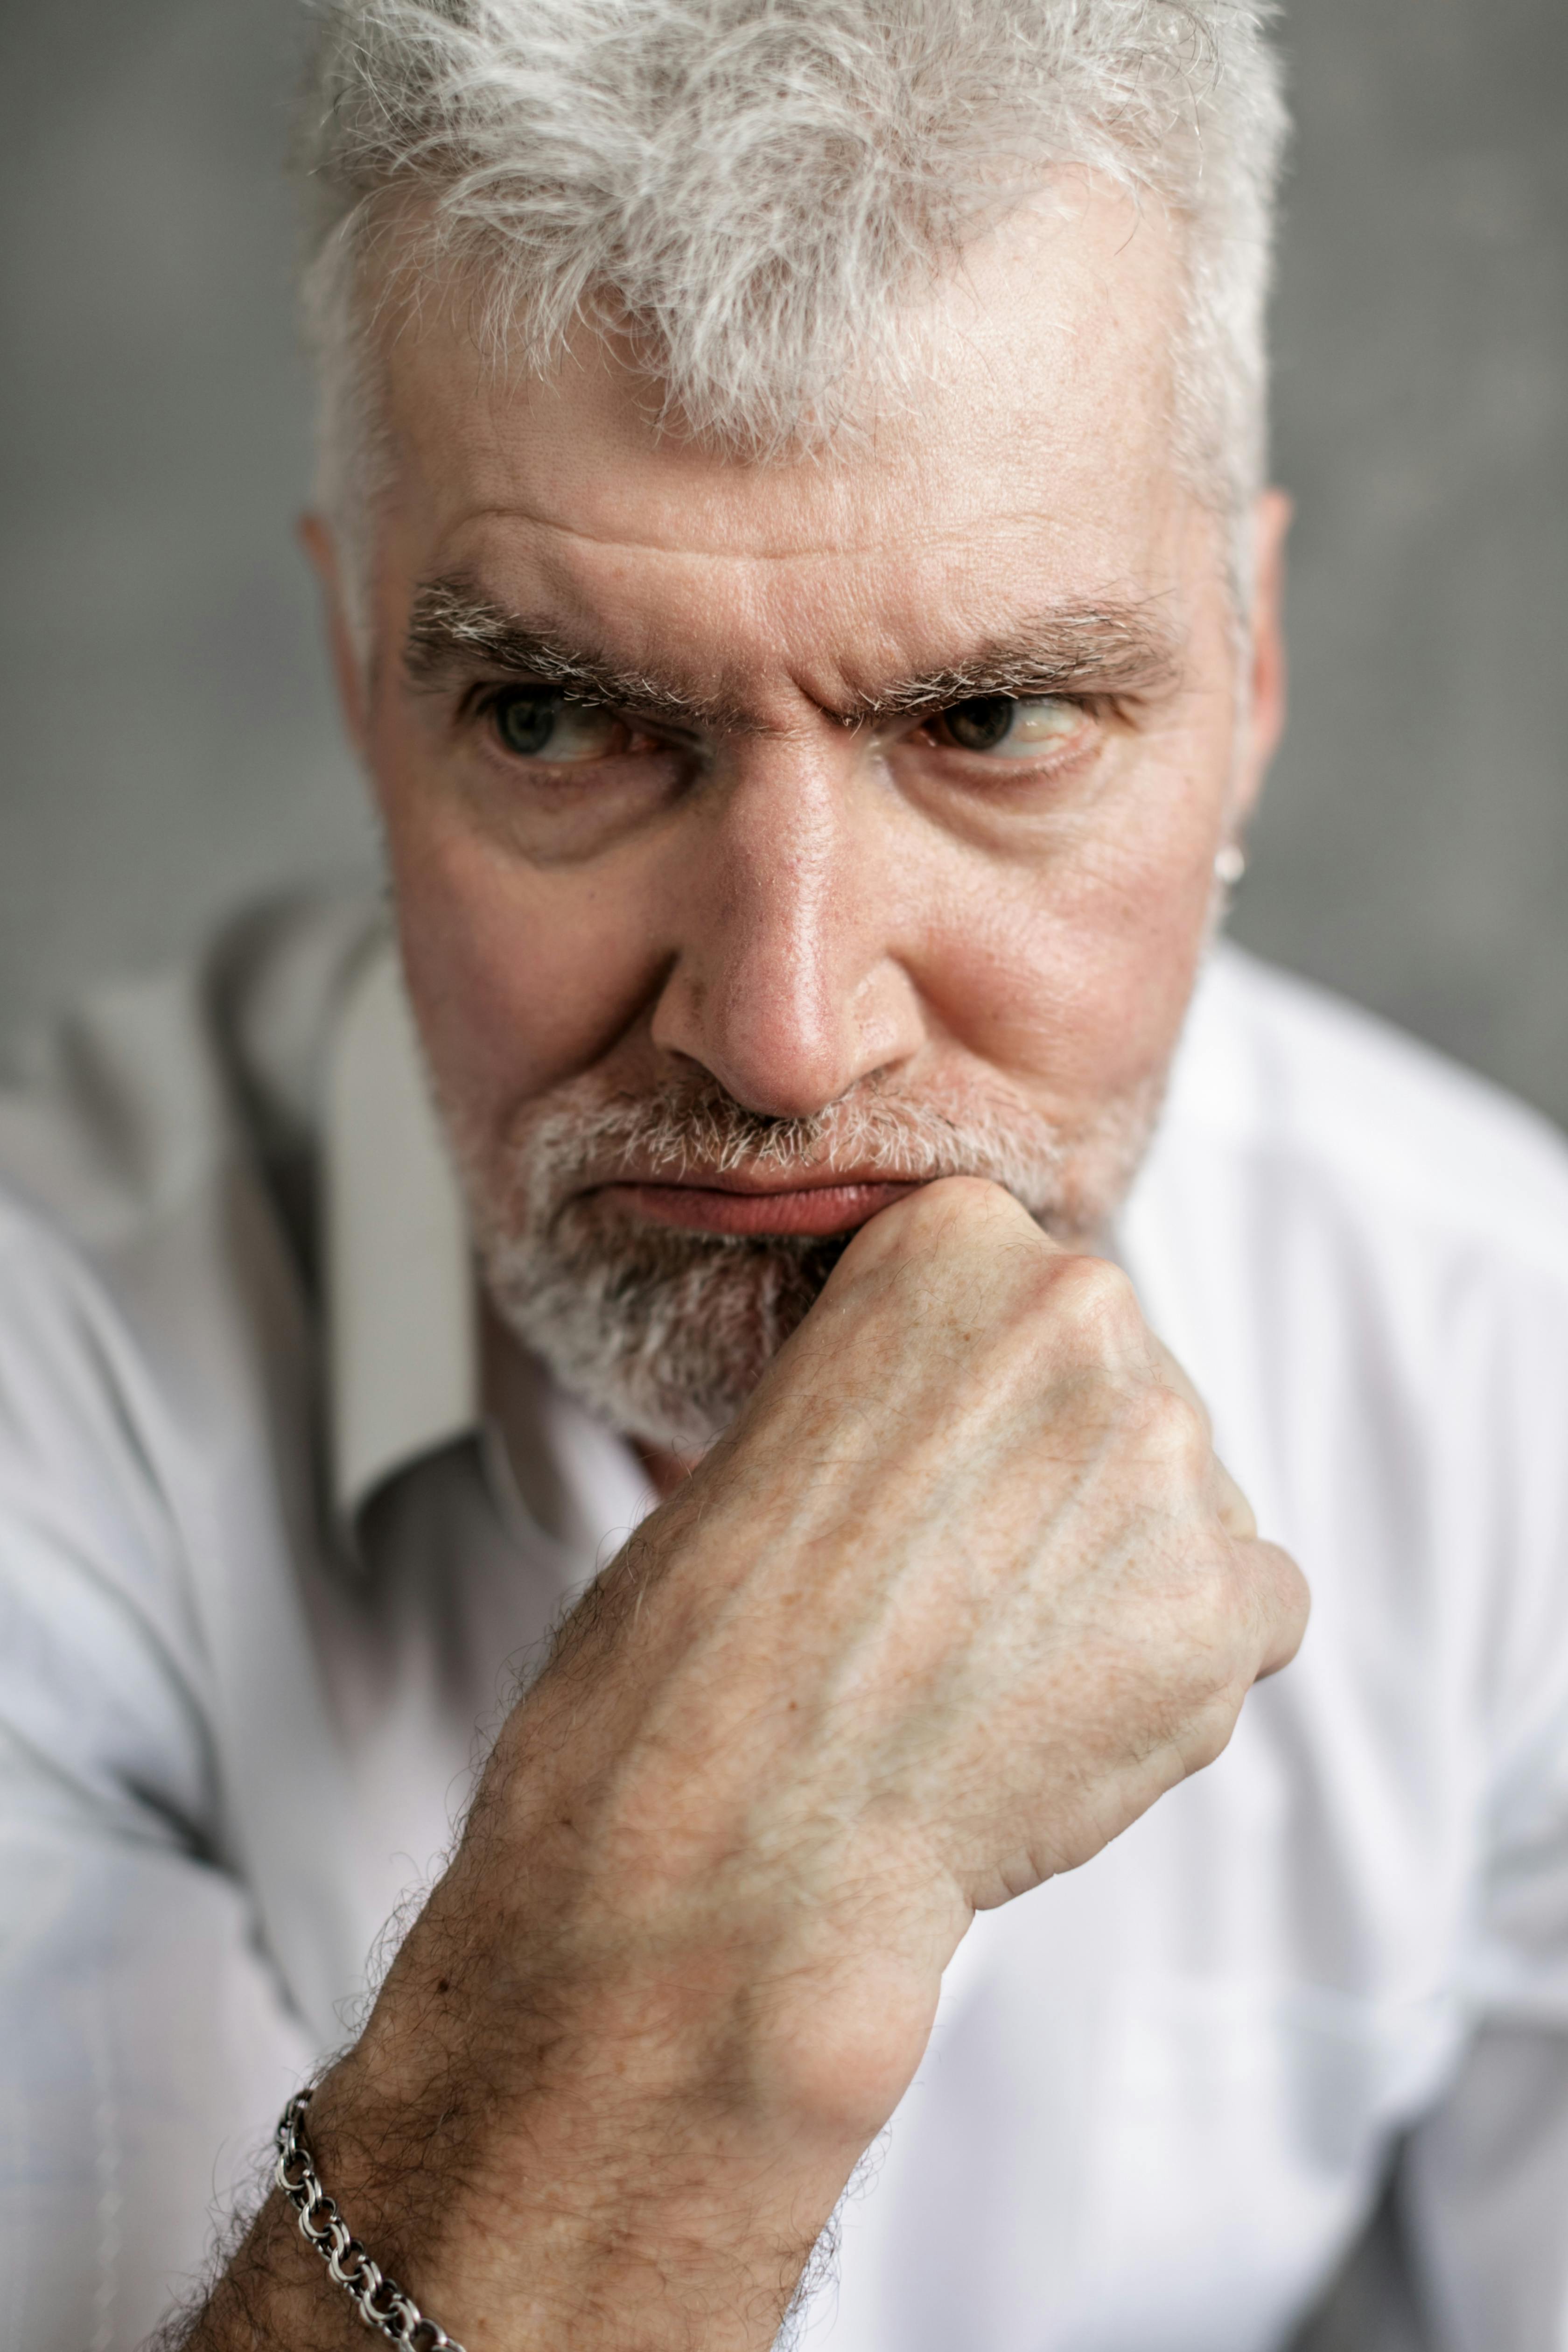 Un hombre malhumorado con la barbilla apoyada en la mano | Fuente: Pexels